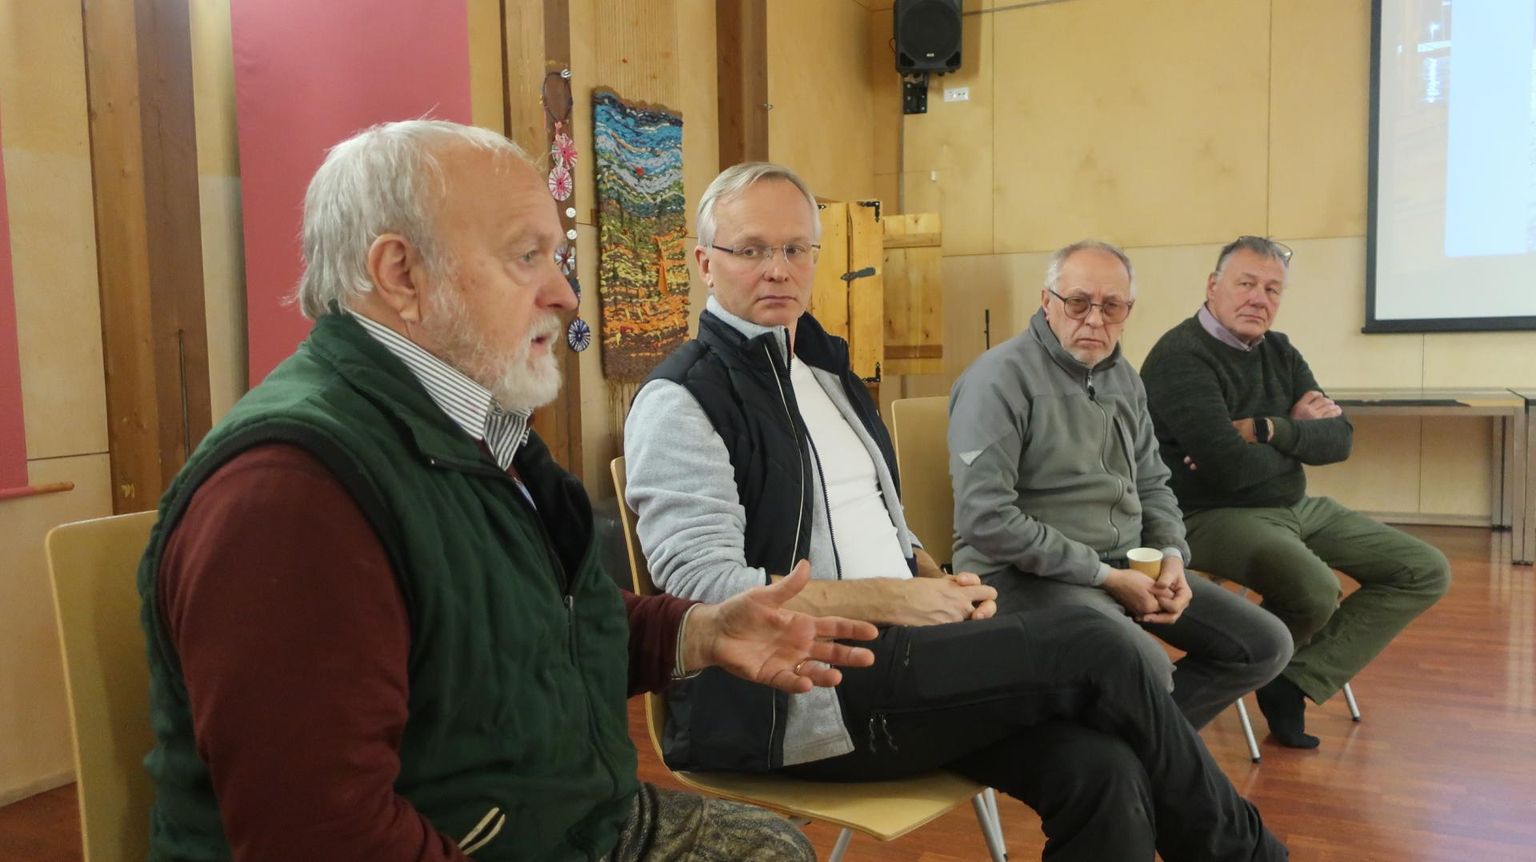 Keskkonna seisundi pärast peale paisjärve allalaskmist muretsesid teiste hulgas Nikolai Laanetu (vasakult), Levo Tohva, Aivar Kottise ja Kalmer Tint.